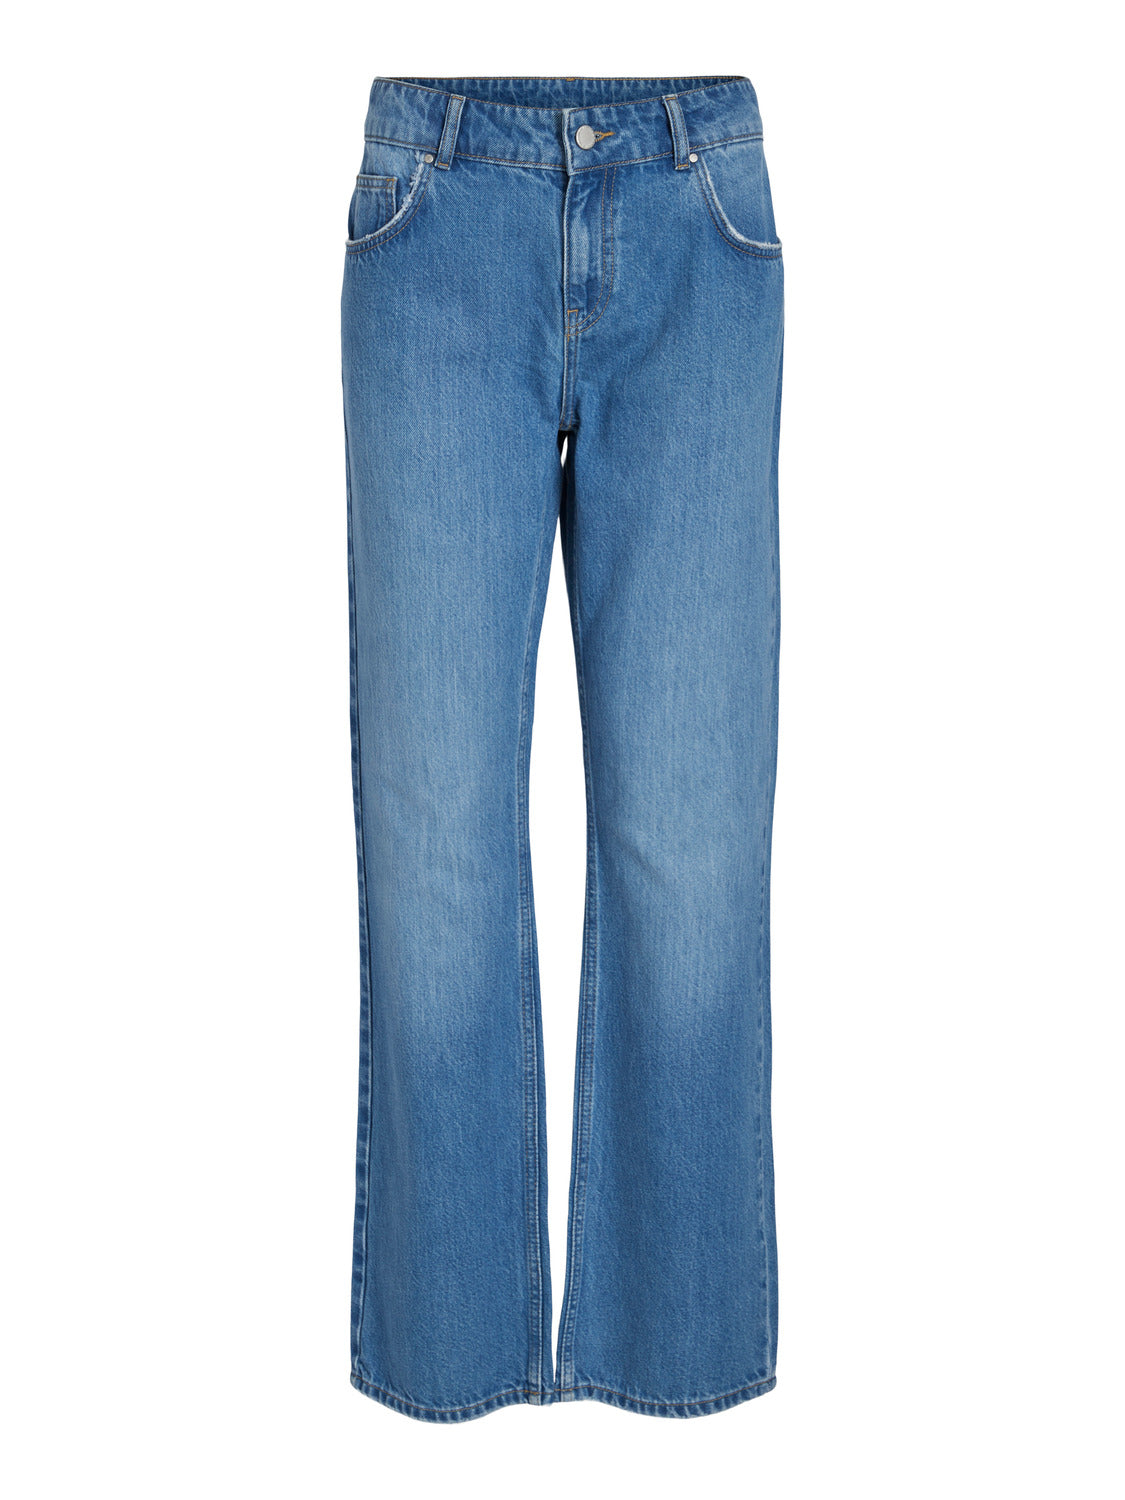 VIMARIA Jeans - Medium Blue Denim